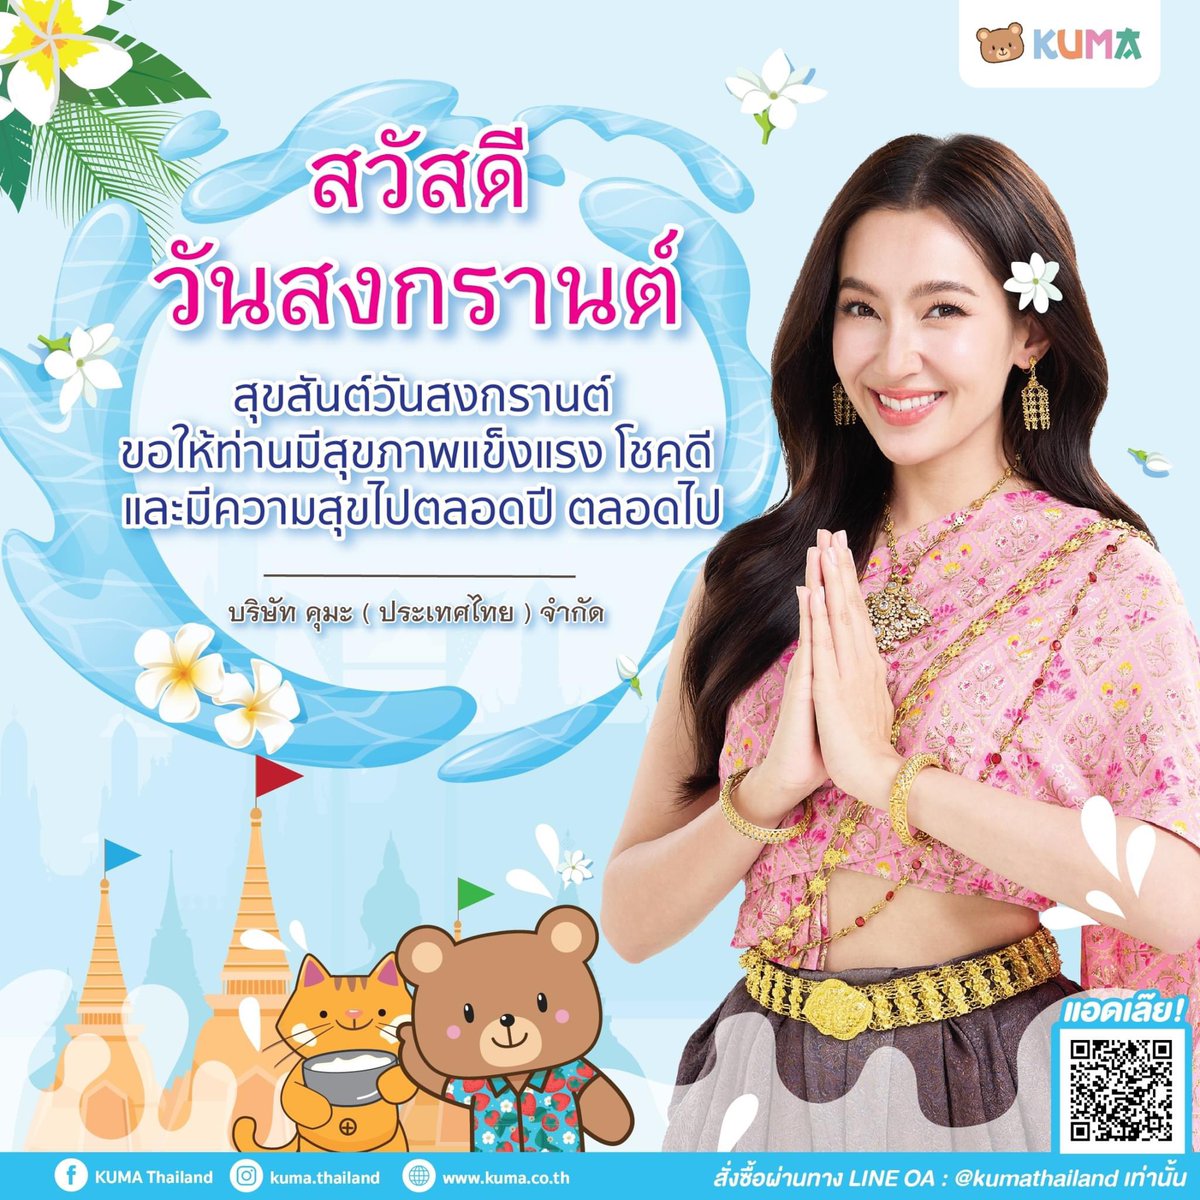 💦สวัสดีวันสงกรานต์💦 ขอให้ทุกท่านสุขภาพแข็งแรง โชคดี 
และมีความสุขตลอดปี 2567 นะครับ🧸 
.
❤️ เลือกคบทิชชู่คุ้มๆ เลือกคบทิชชู่คุมะ❤️ 
.
#kumathailand #สงกรานต์2567 #KumaxBella
Cr. kuma.thailand 
#เบลล่าราณี #bellacampen